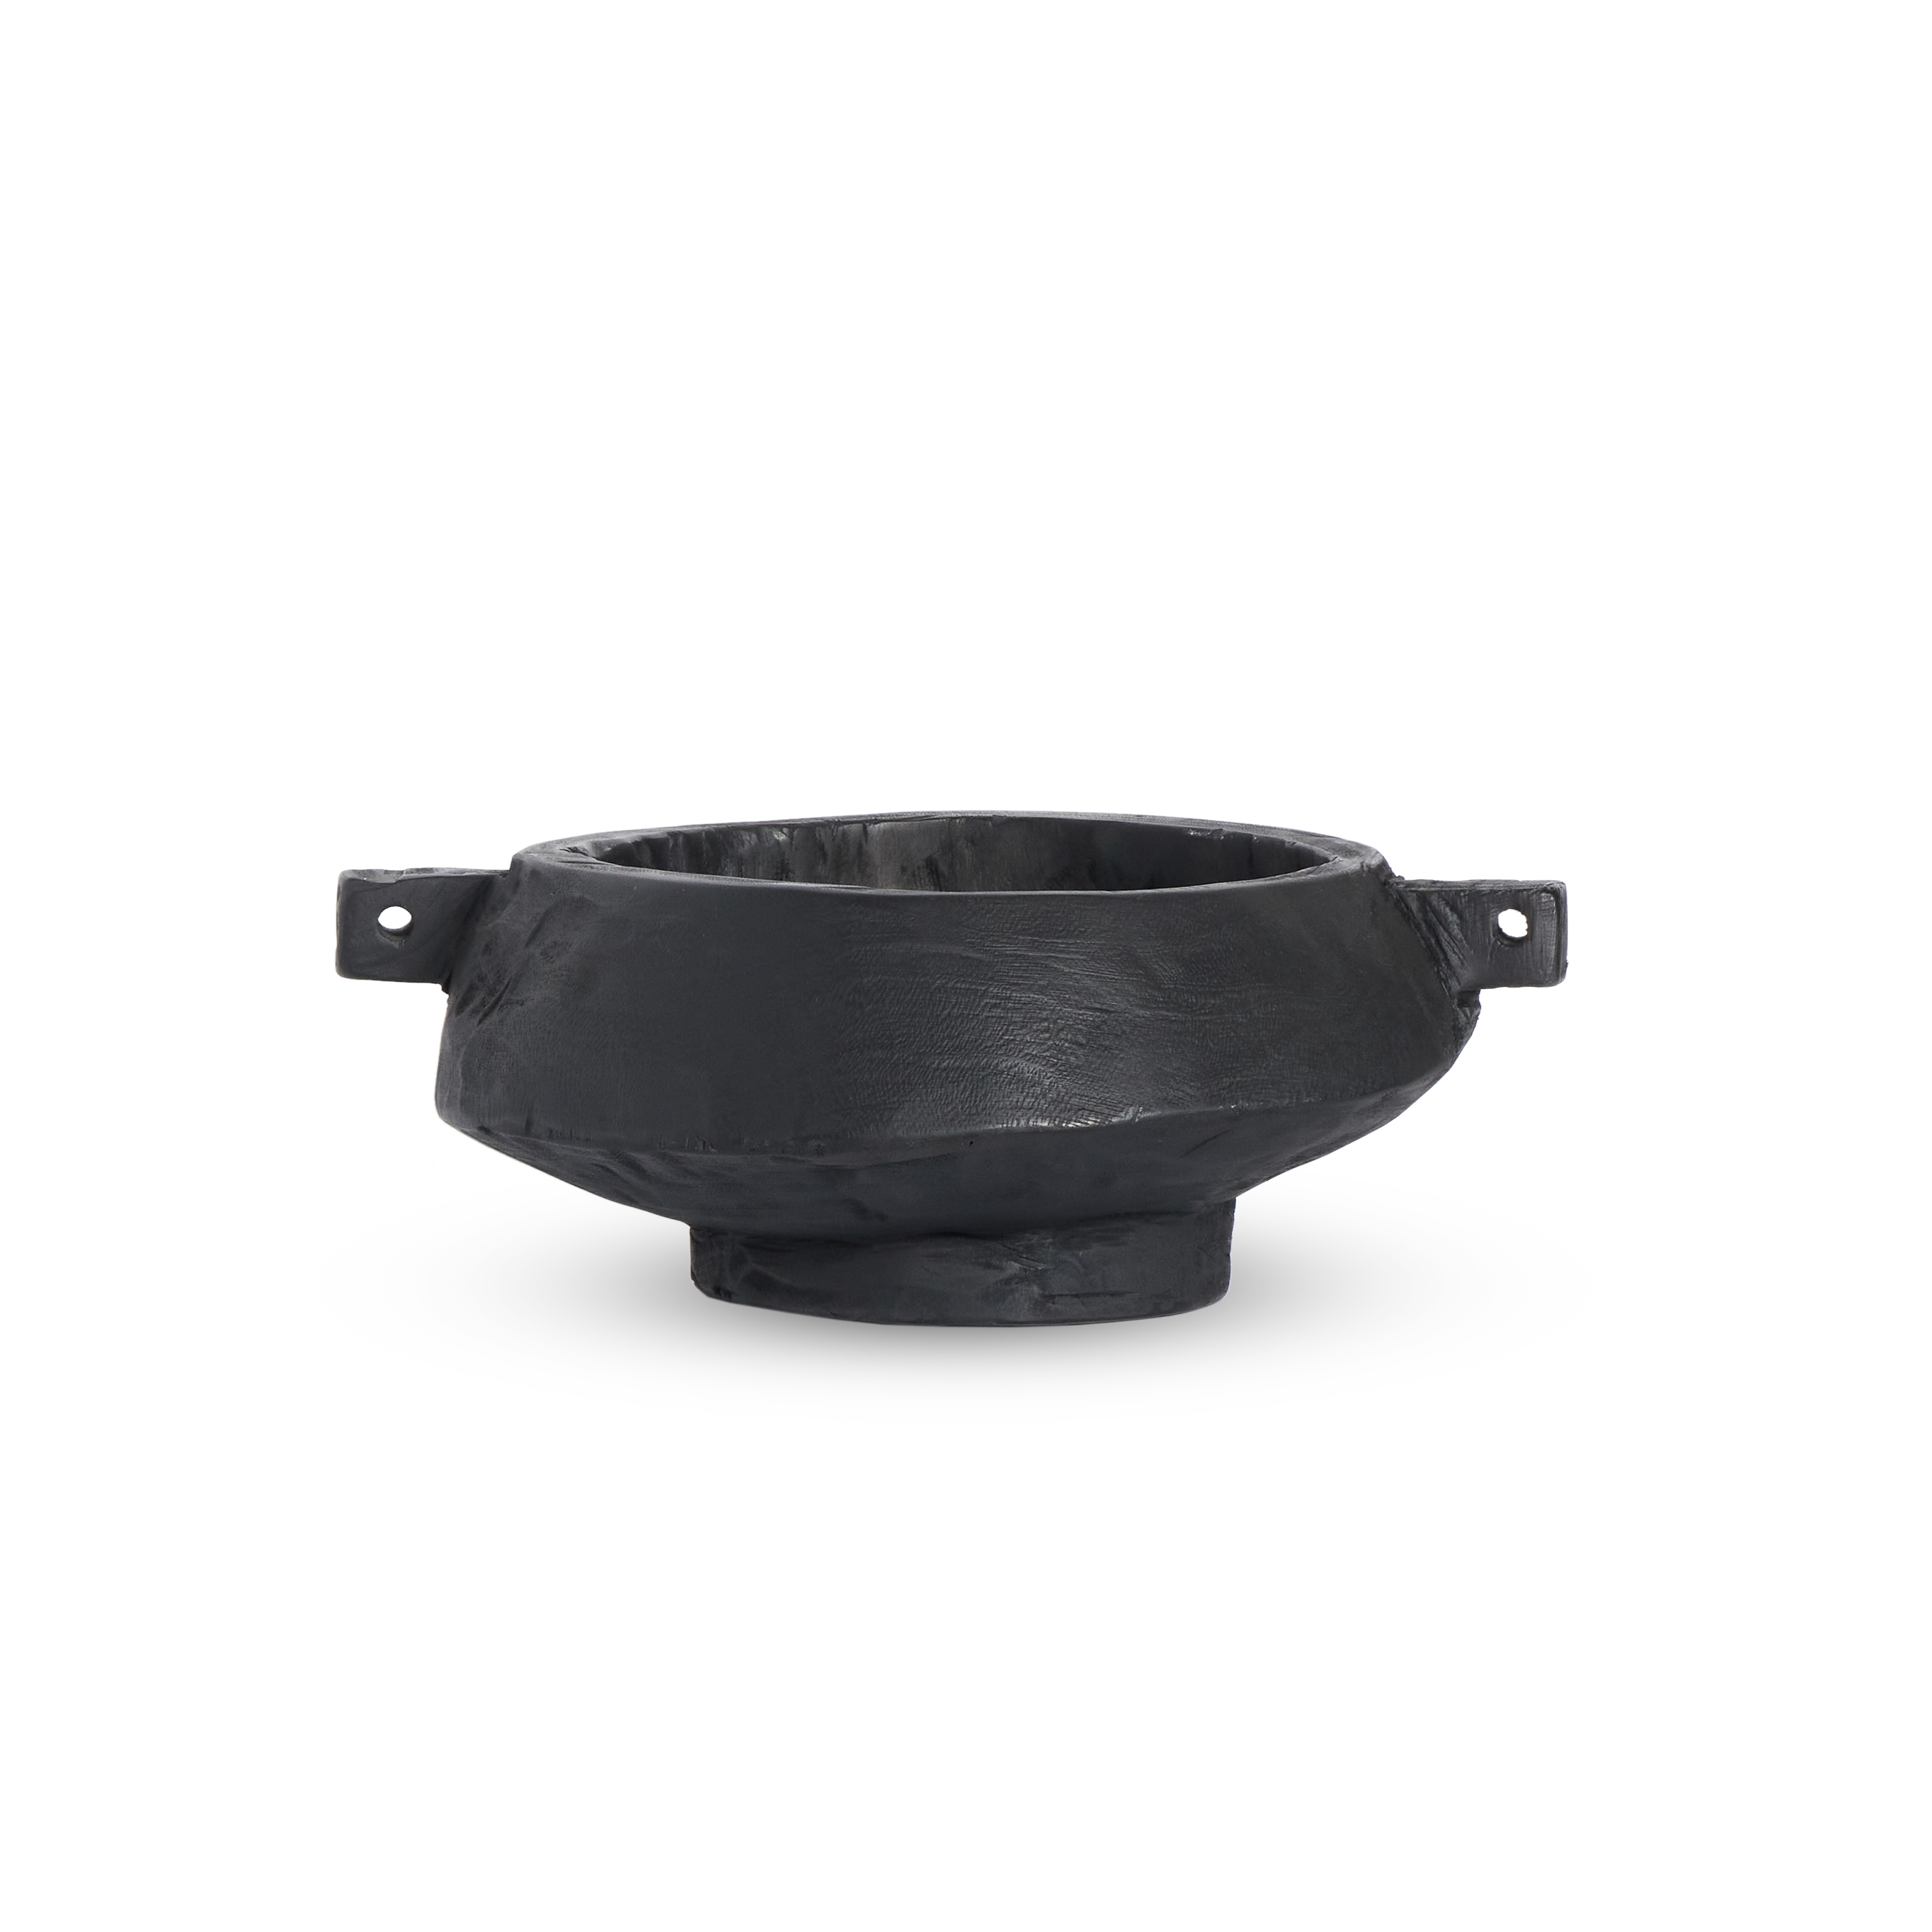 Shaw Bowl-Carbonized Black - Image 0